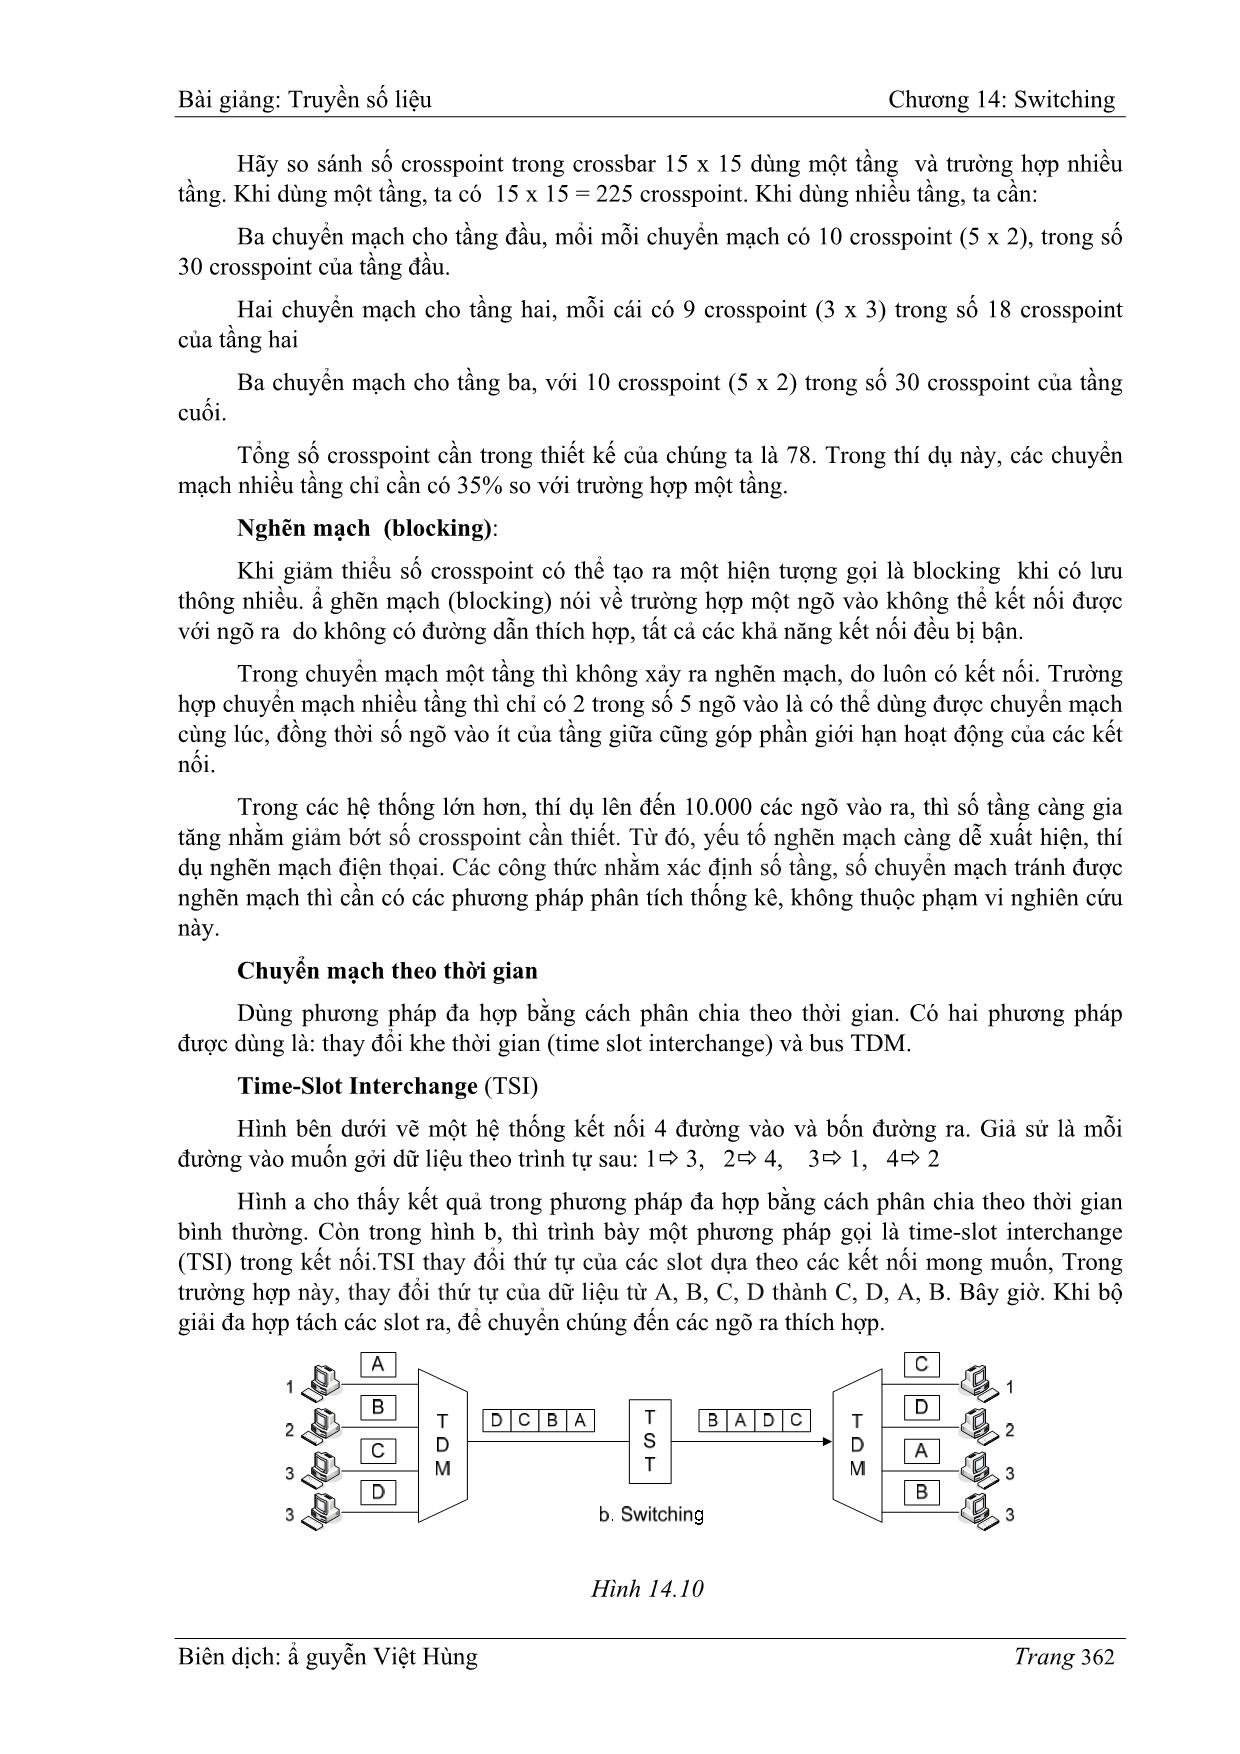 Bài giảng Truyền số liệu - Chương 14: Switching - Nguyễn Việt Hùng trang 5